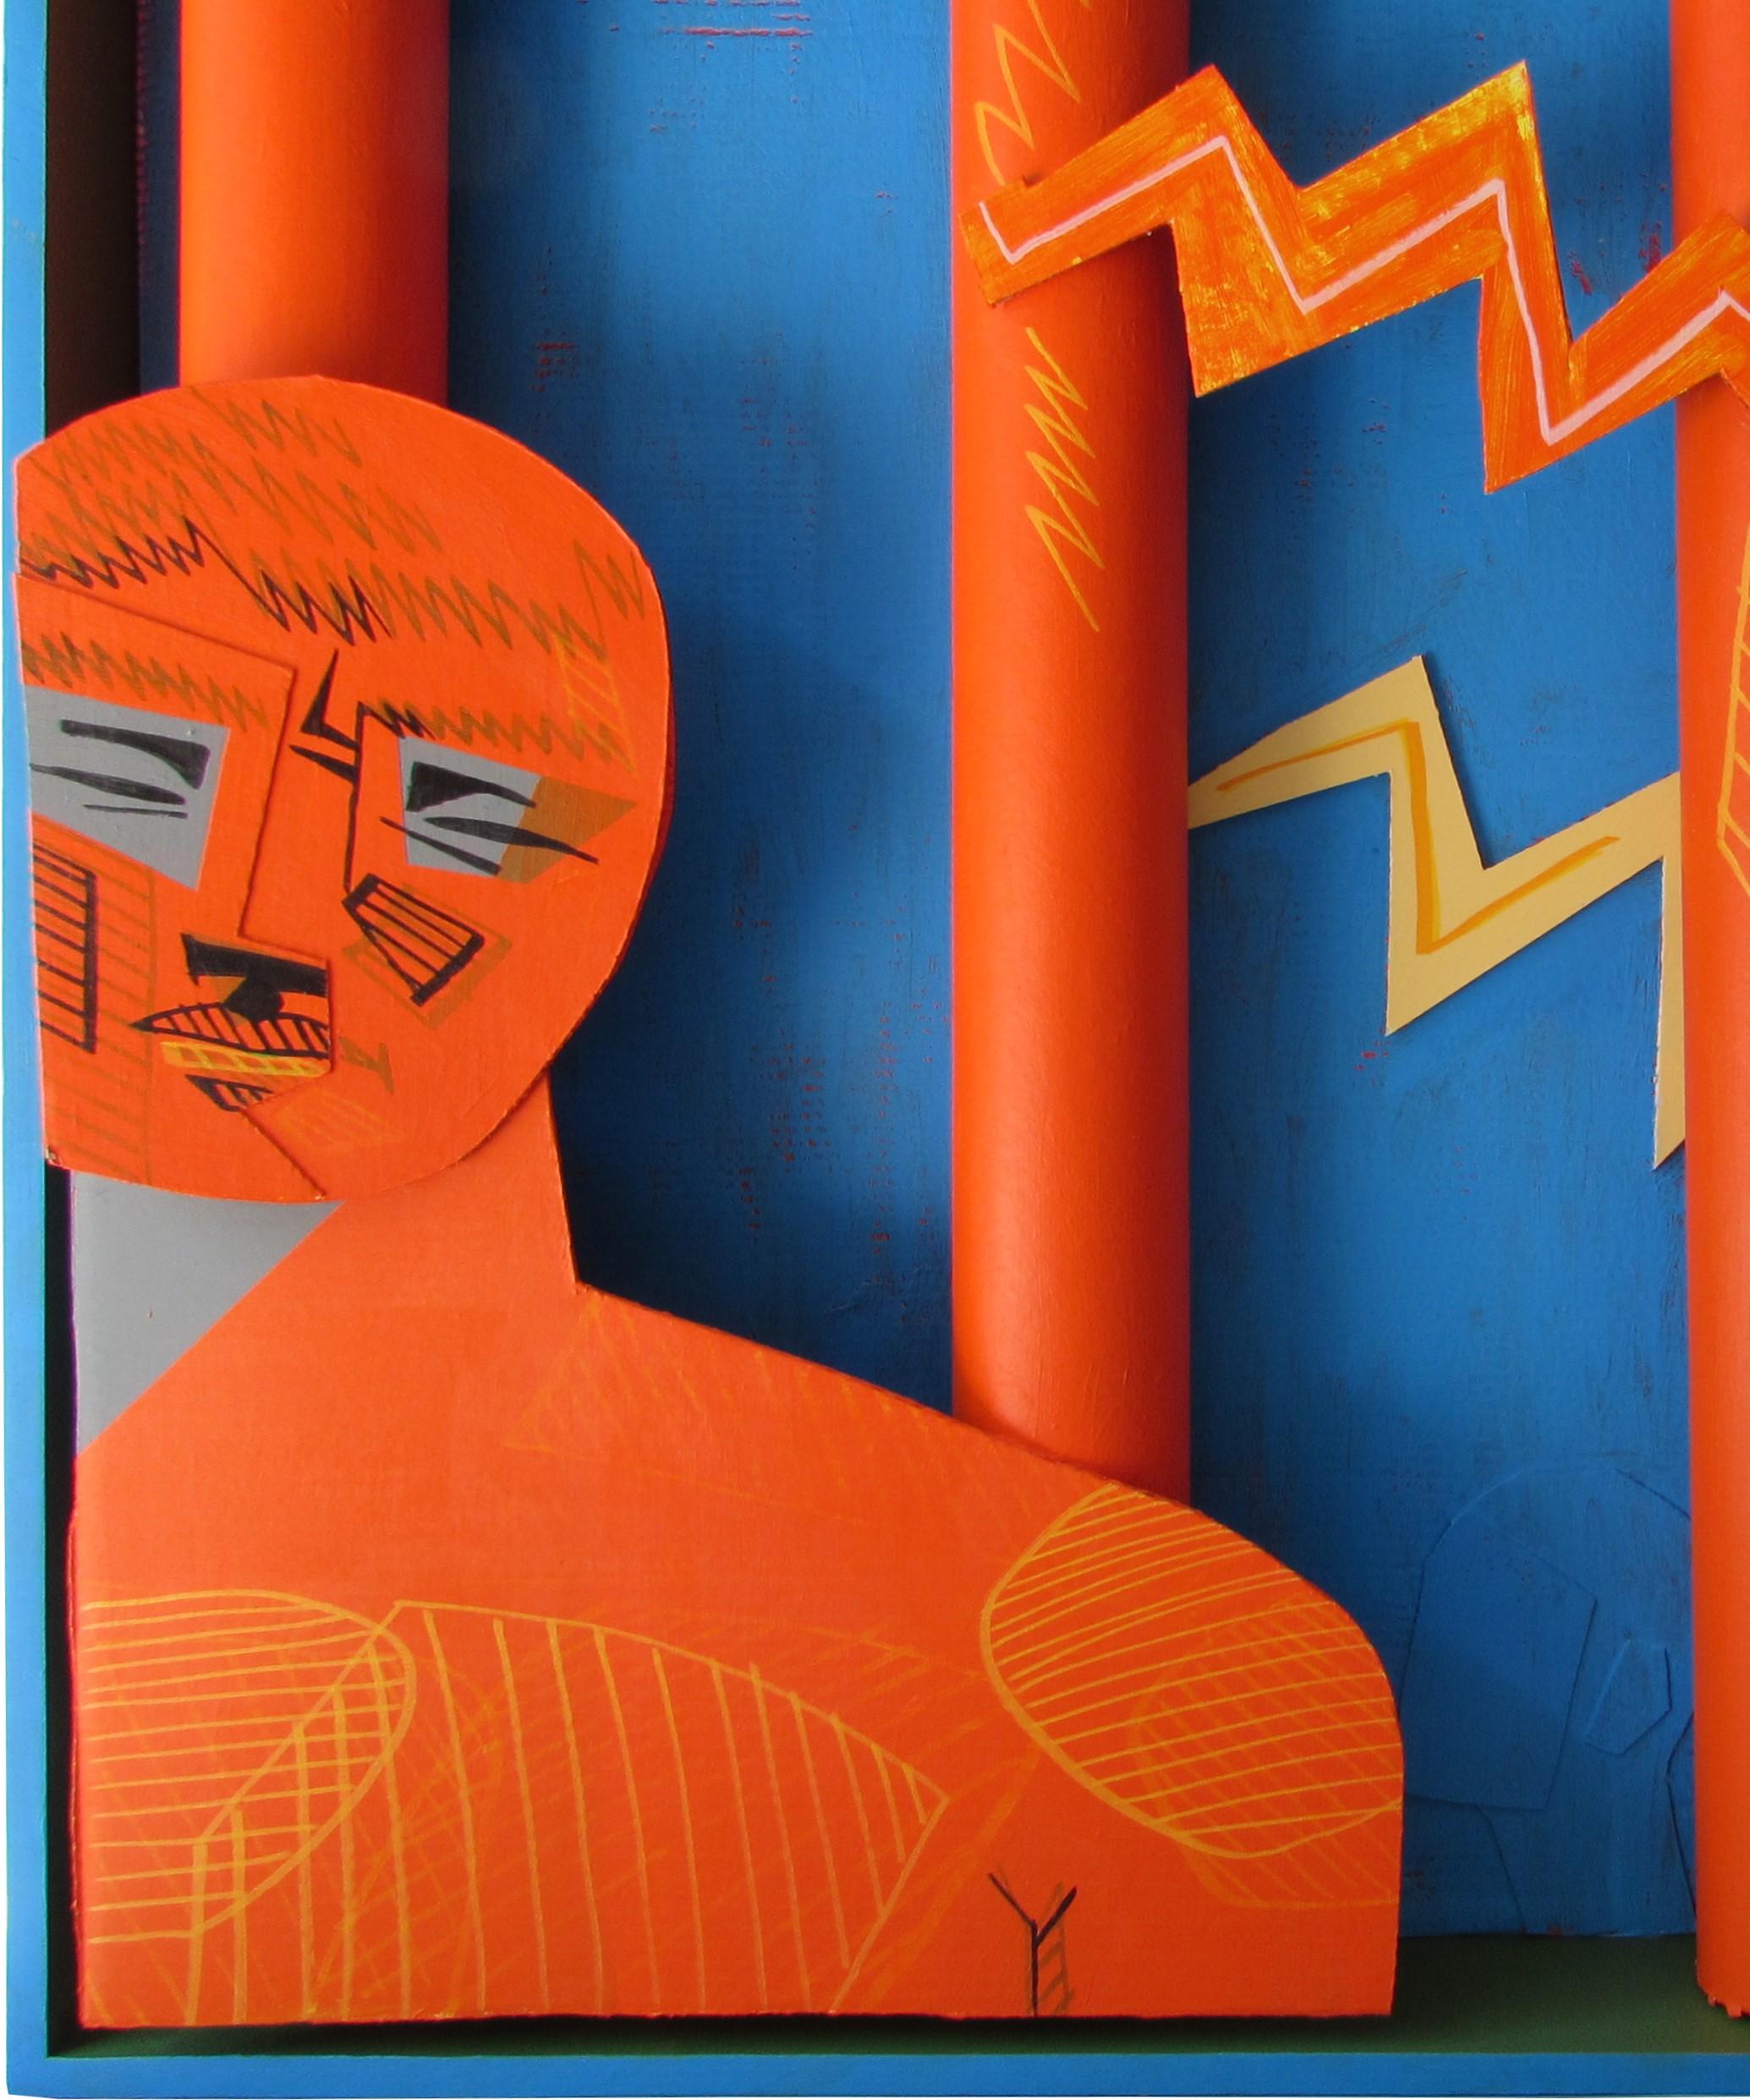 Août, 2016 
Technique mixte : acrylique sur carton, boîte en bois 
40.55 H x 50.78 W x 11.81 D in
103 H x 129 W x 30 D cm

Signé

Le collage d'objets de l'artiste Alexandru Radvan intitulé 